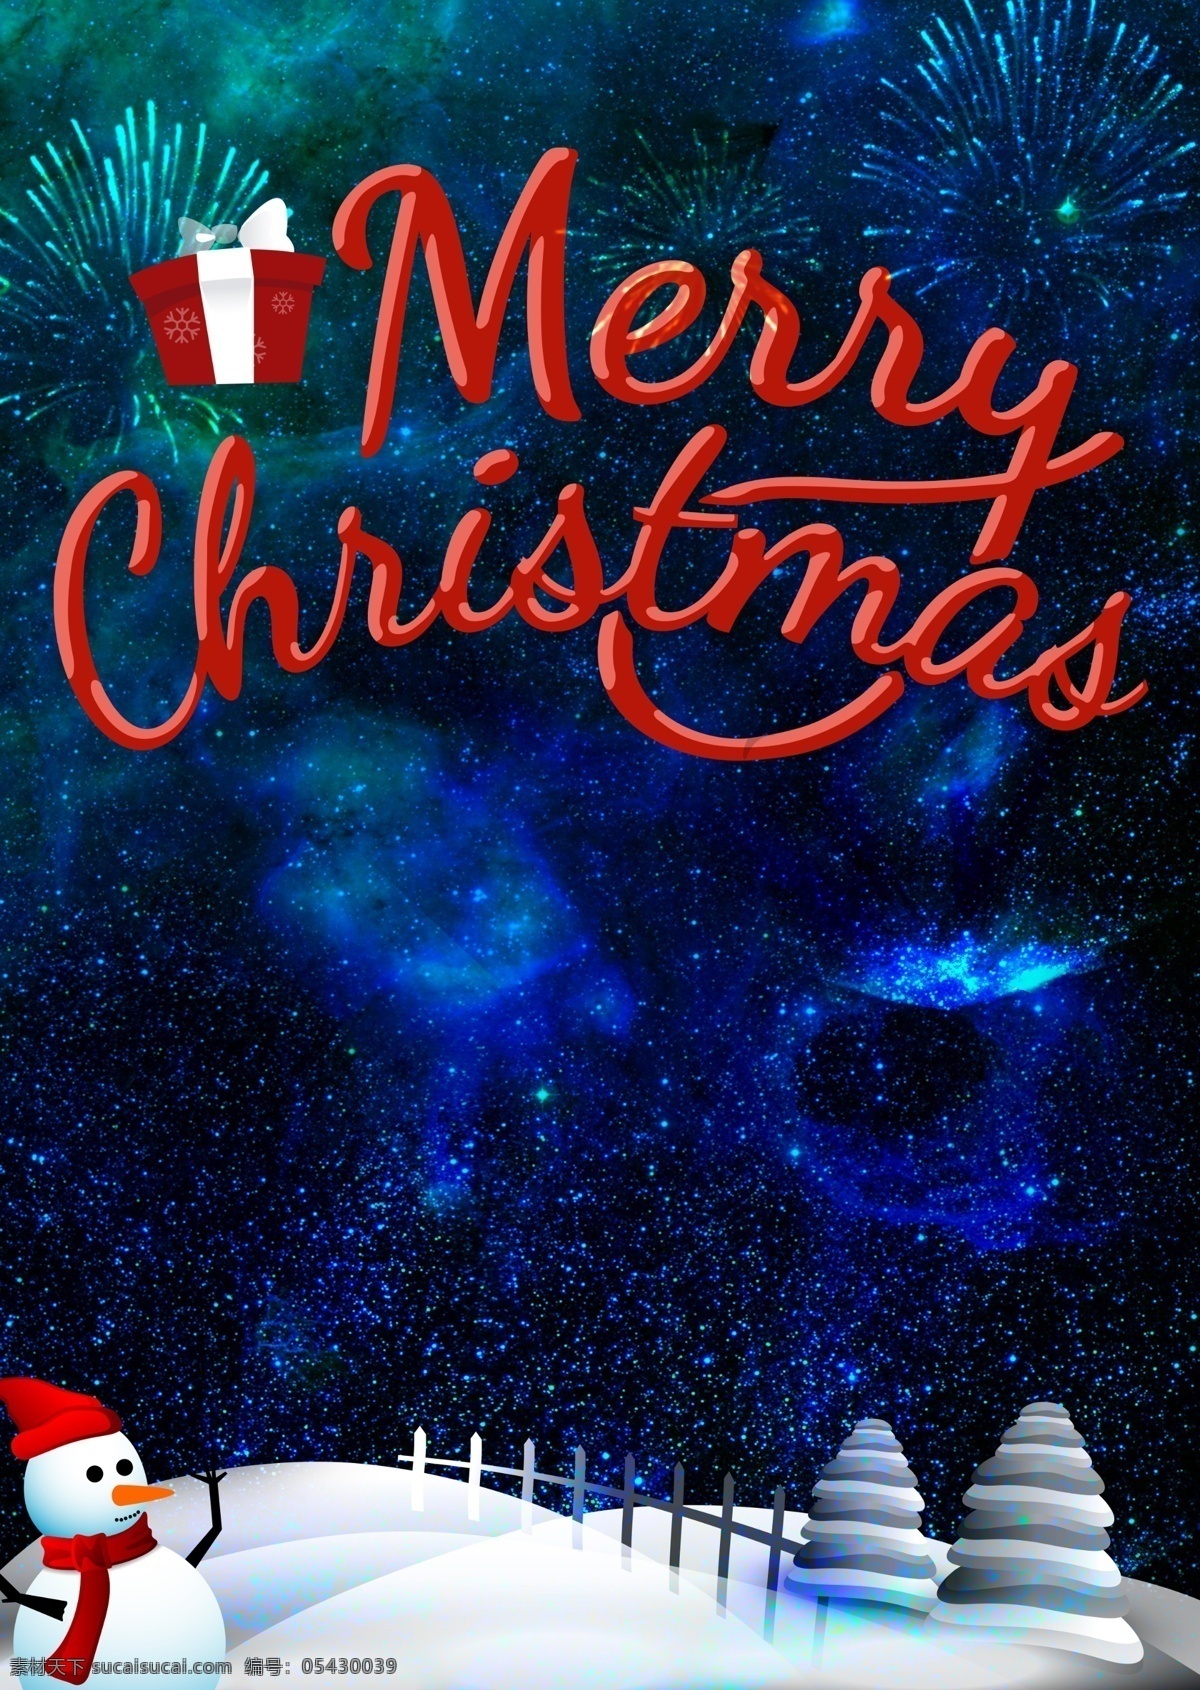 圣诞夜景 圣诞 chris 夜景 星空 雪人 雪 梦幻 礼物 christmas a4 300像素 节日 喜庆 西方 ps海报